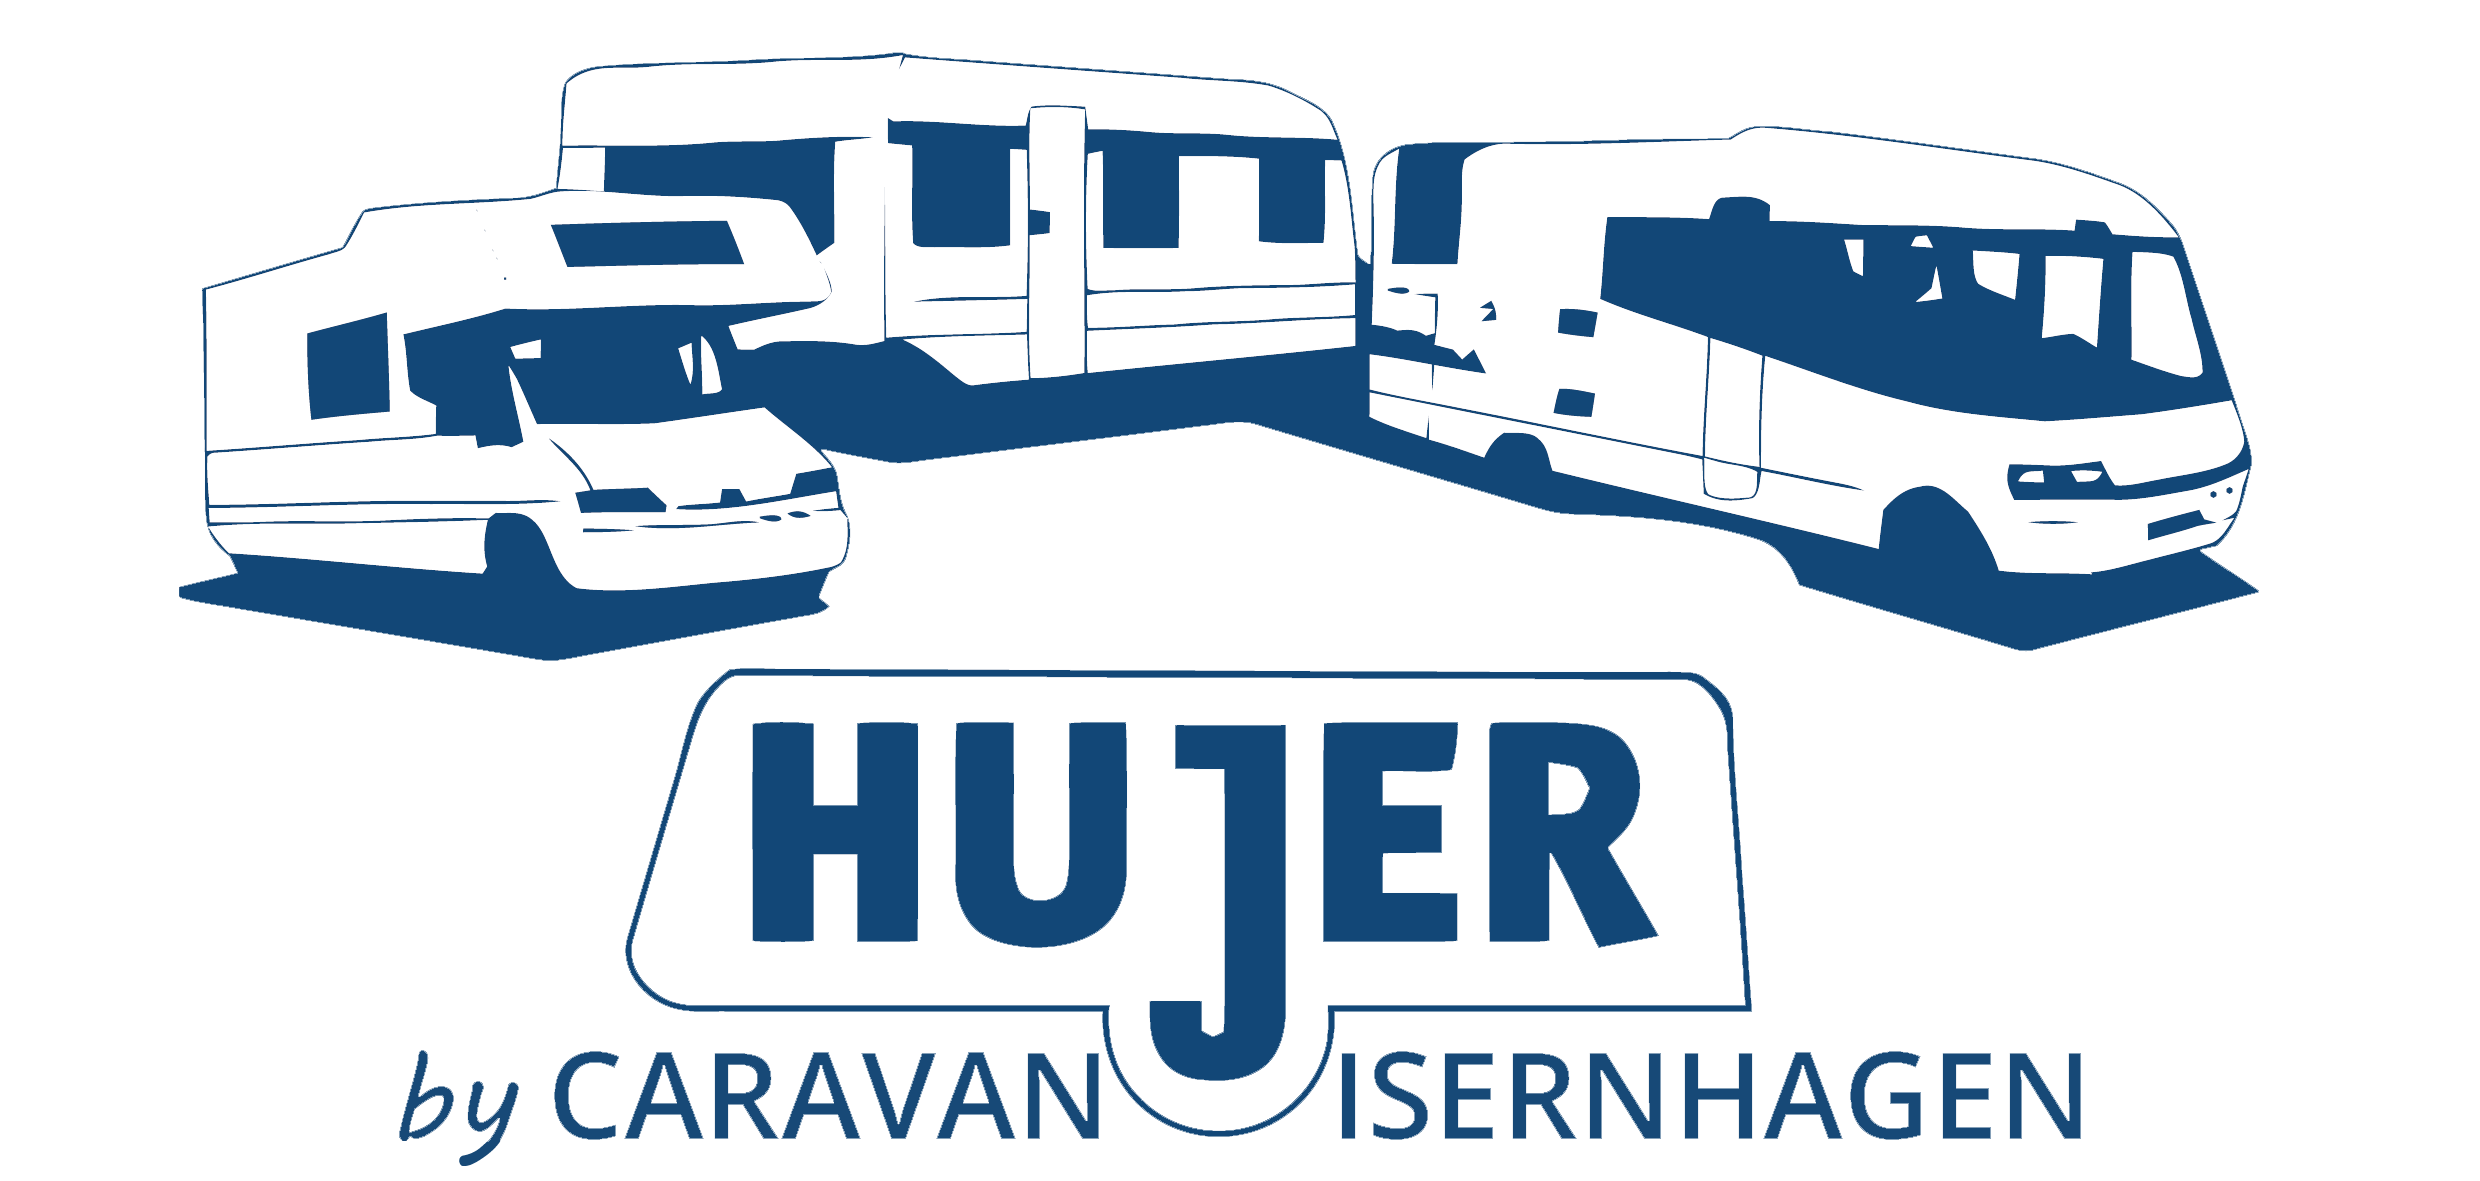 Caravan Isernhagen GmbH